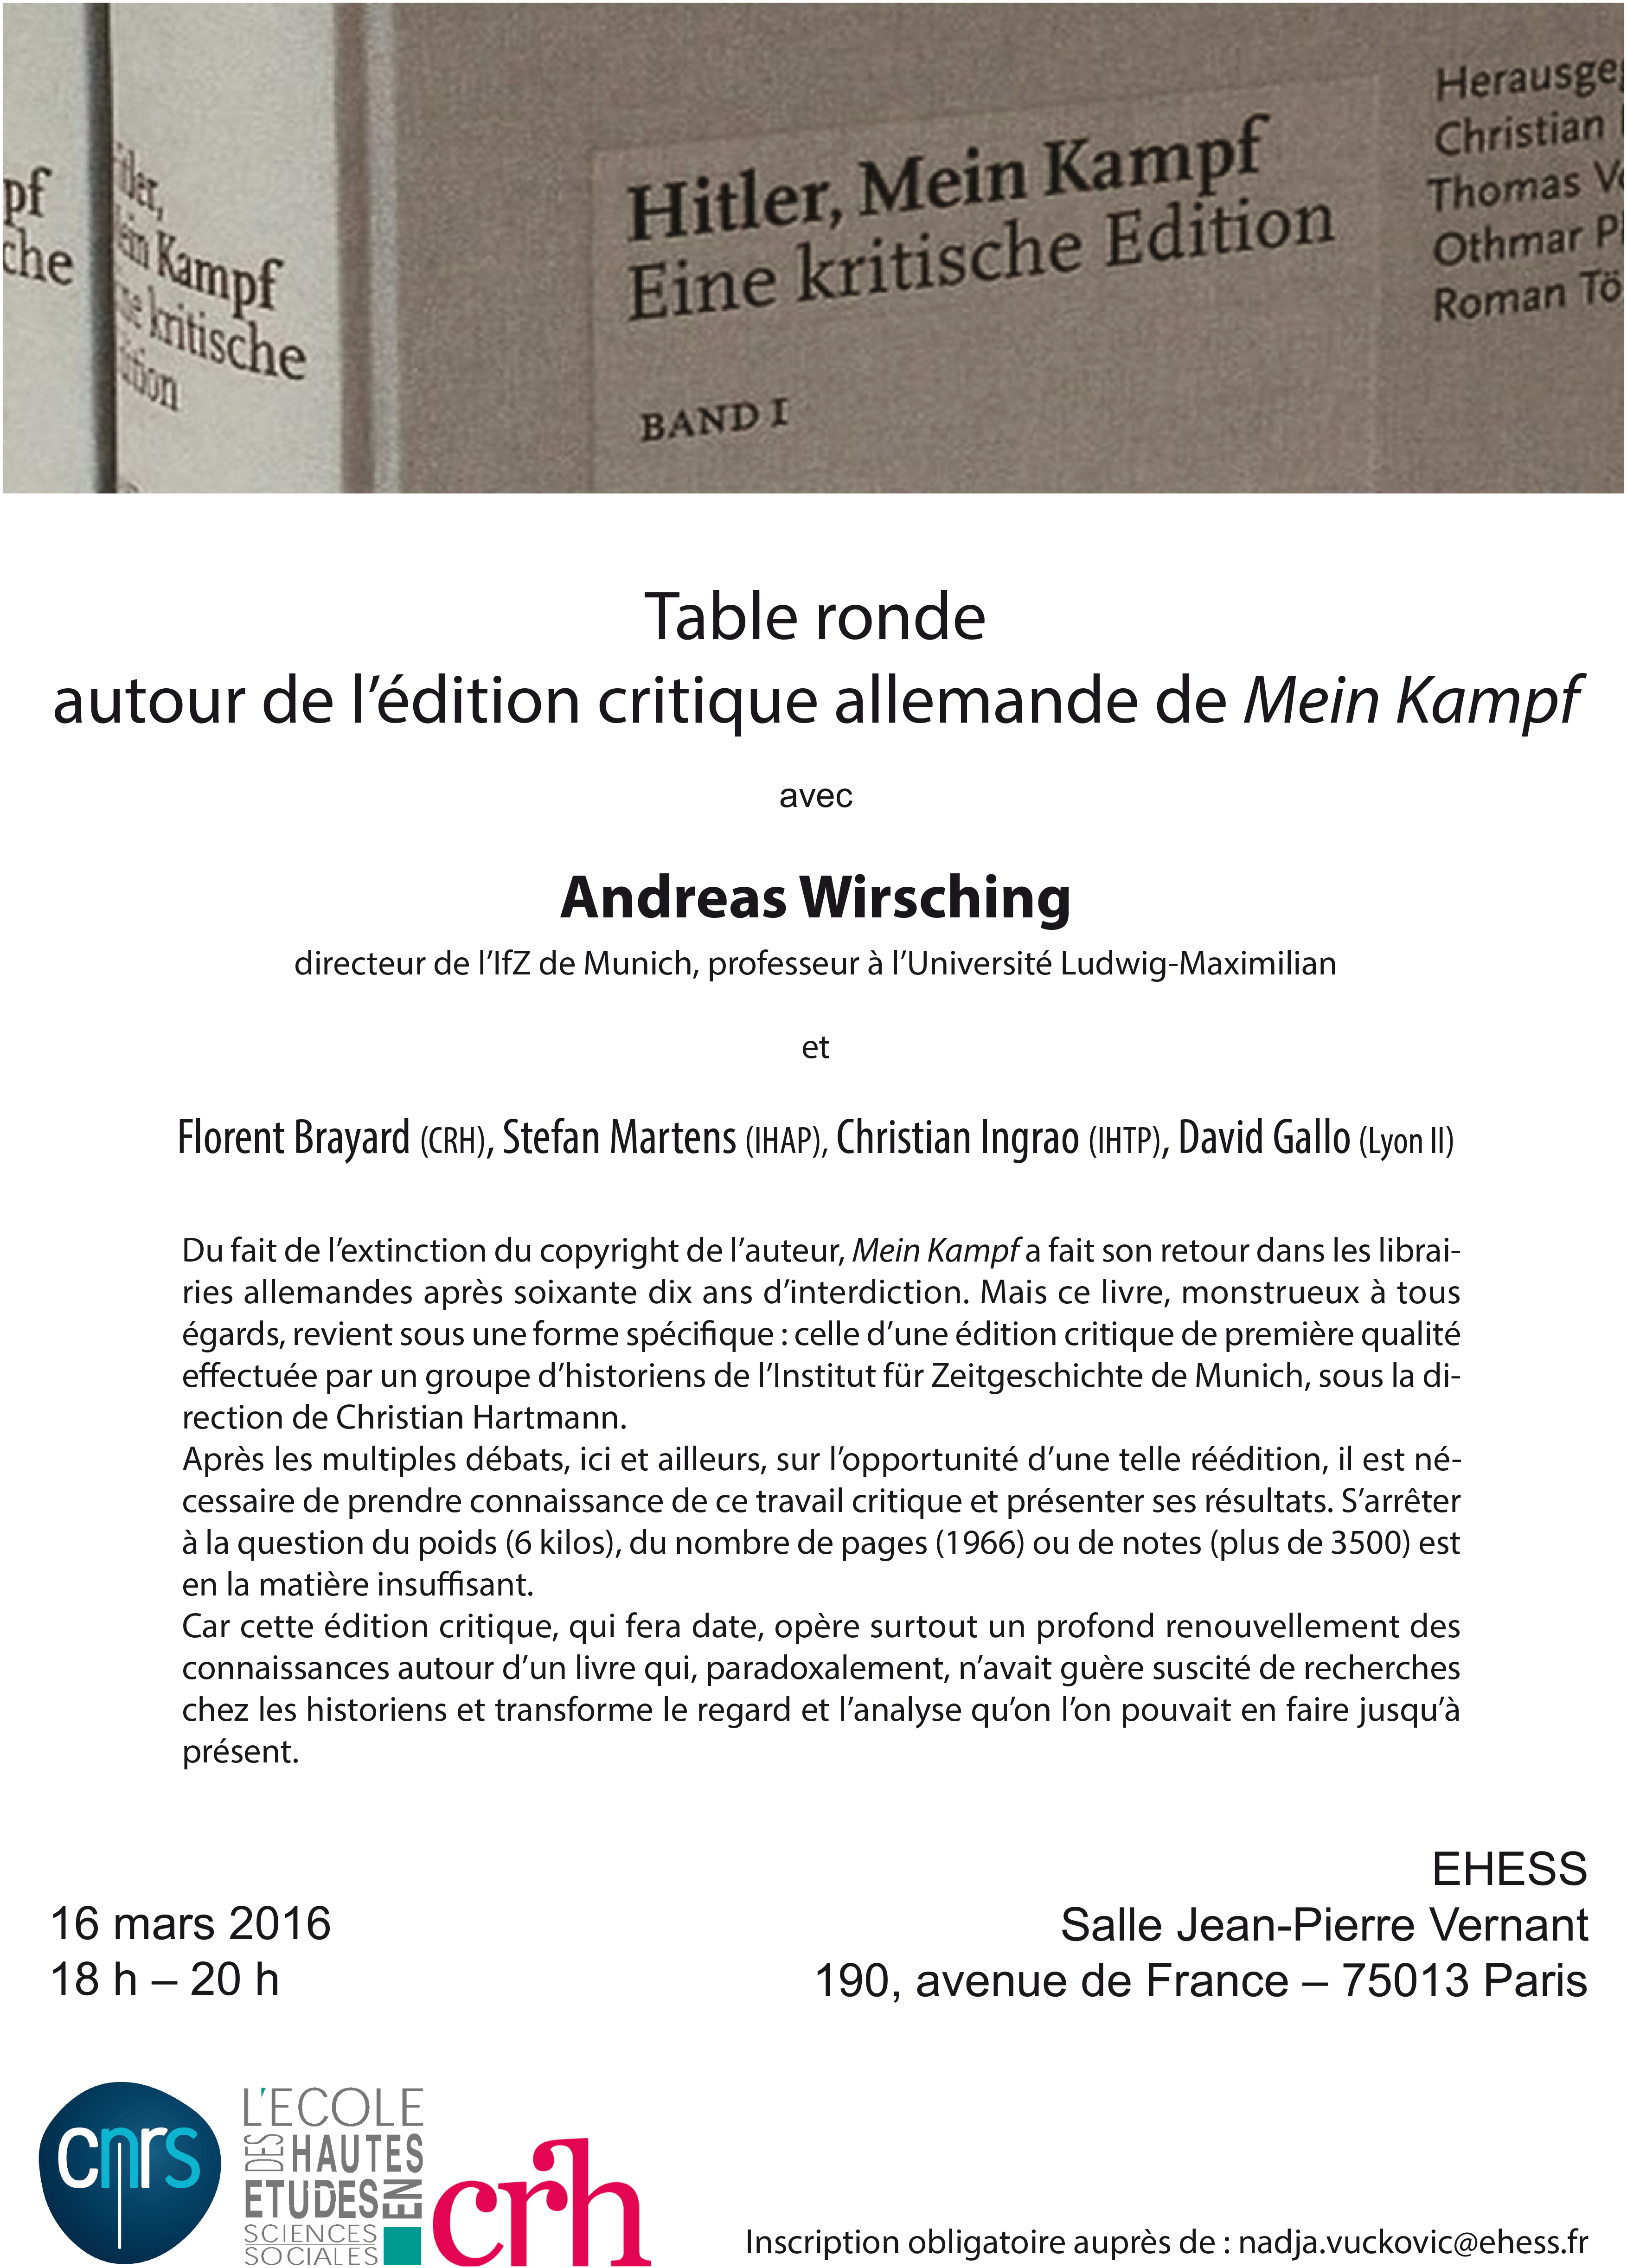 Republier Mein Kampf ? Autour de l’édition critique allemande de l’Institut für Zeitgeschichte